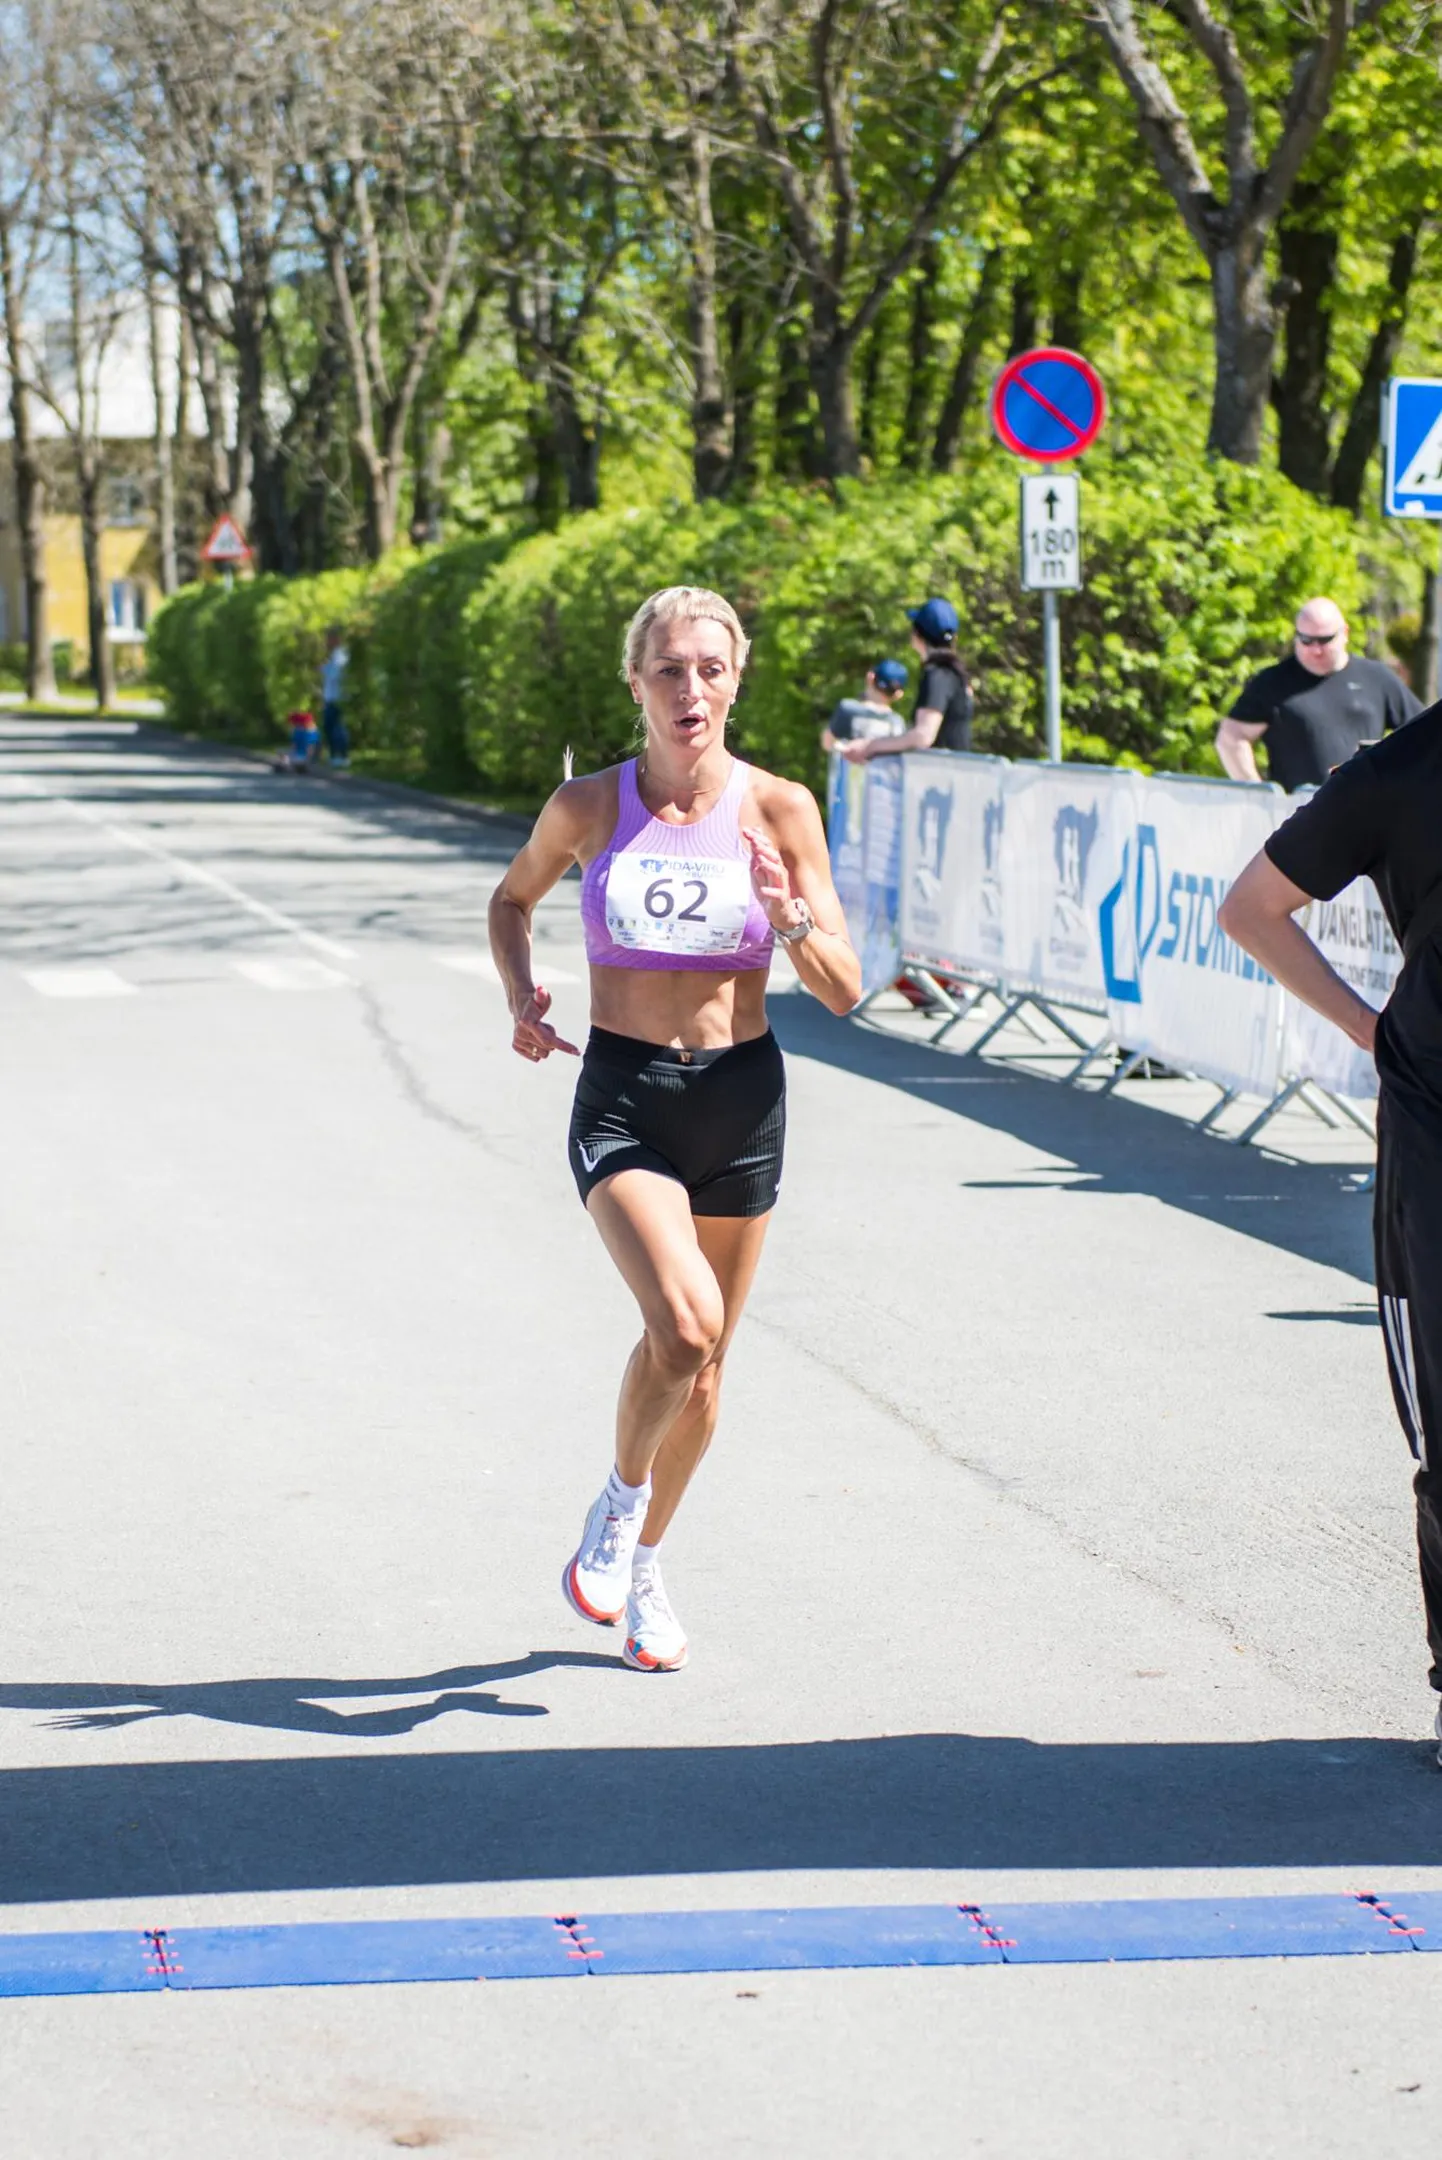 Rakvere jooksja Marit Hiiemaa käis elus esimest korda Kohtla-Järvel ja võitis kohe võistluse.